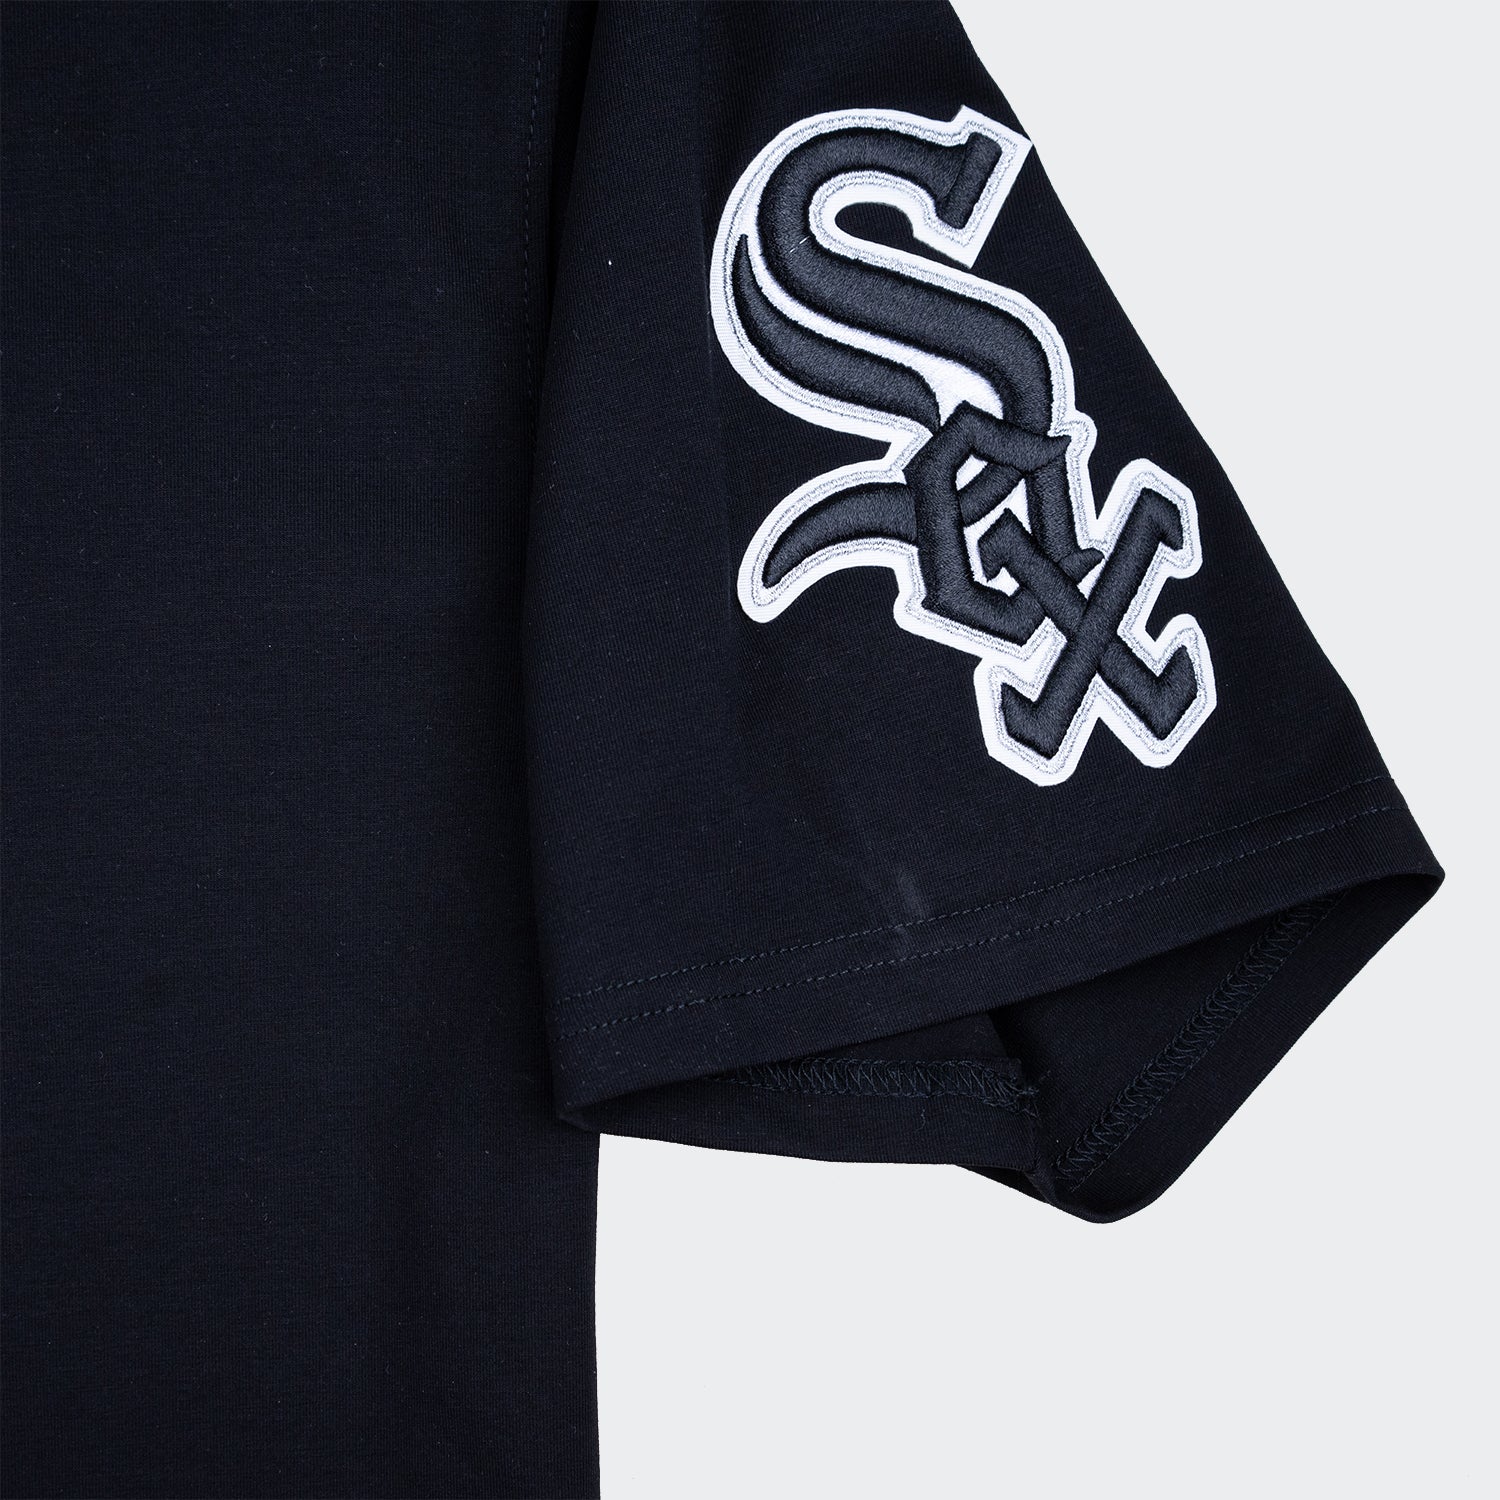 Chicago White Sox New Era Women's V-Neck T Shirt - Grey/White x Small